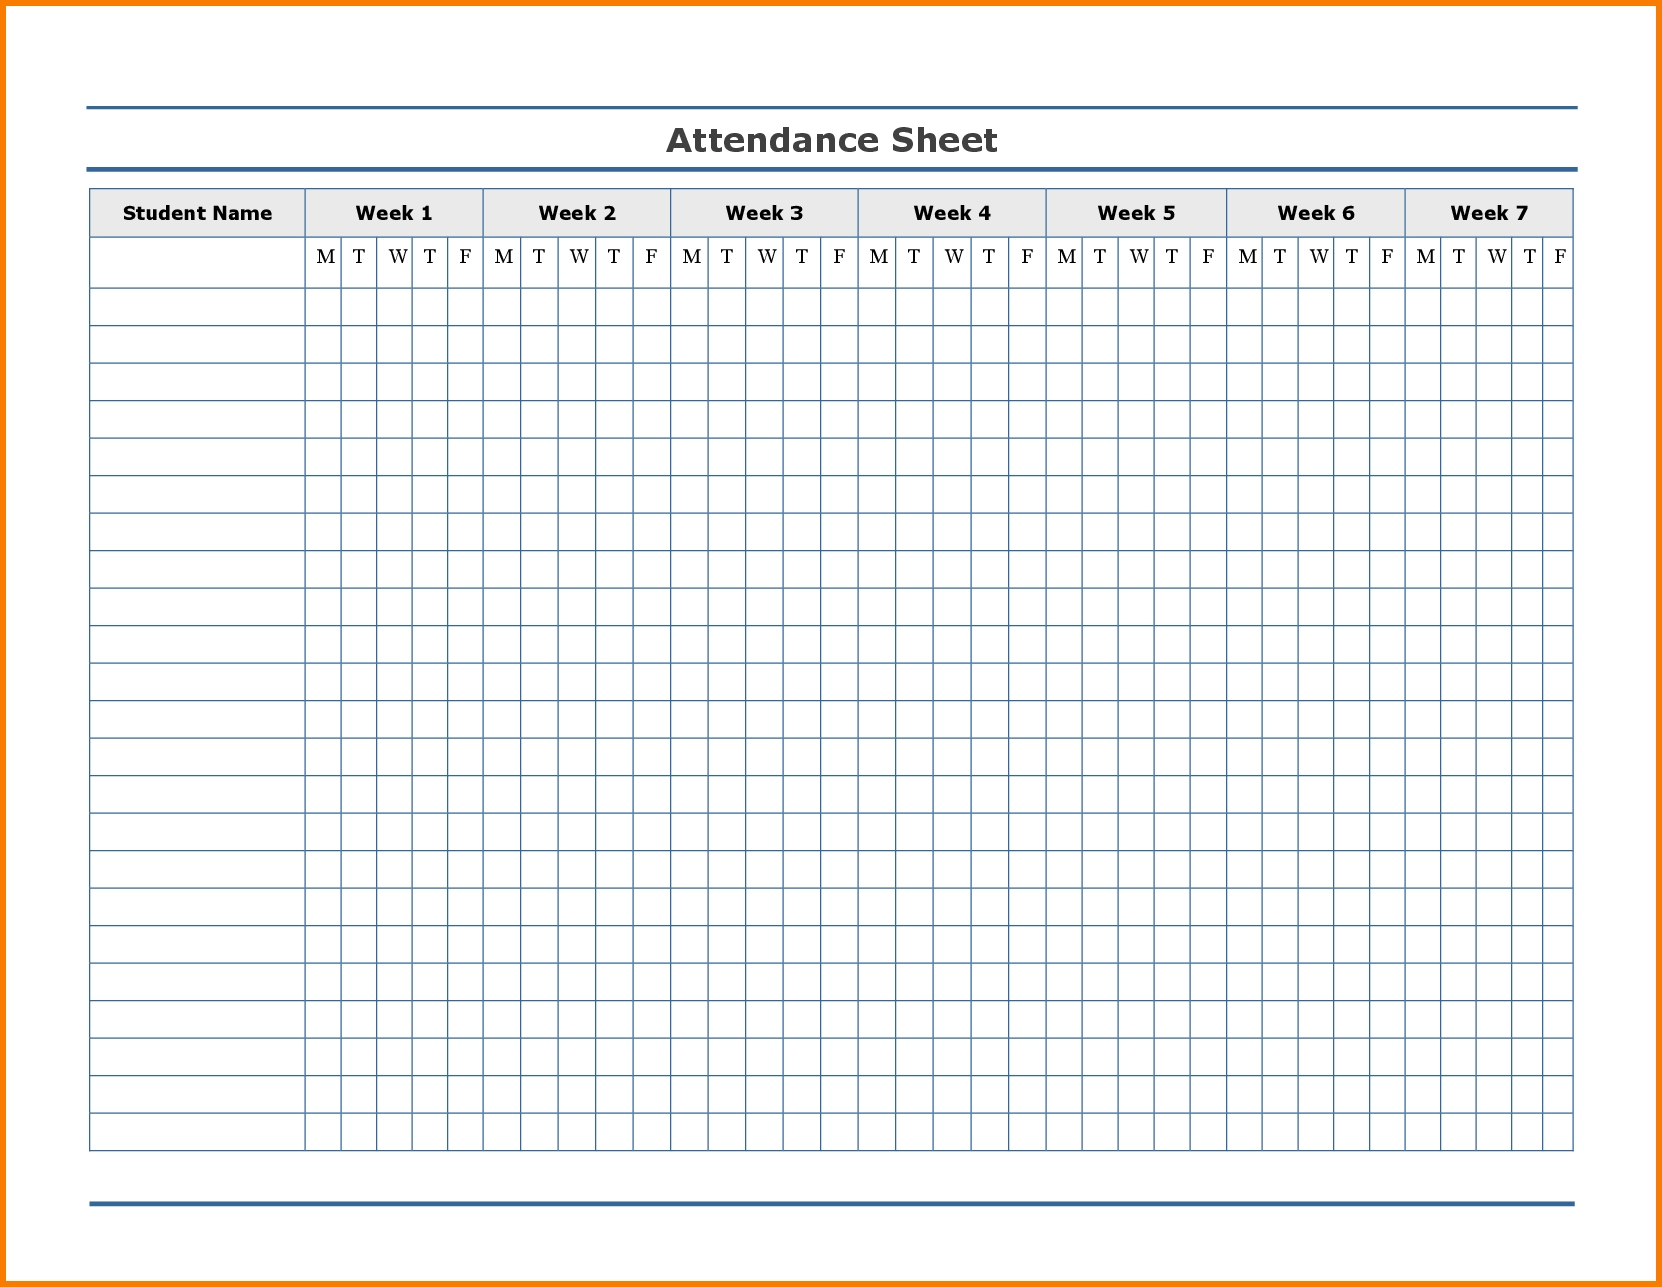 Free Employee Attendance Calendar | Attendance Tracker  2021 Printable Free Attendance Tracker